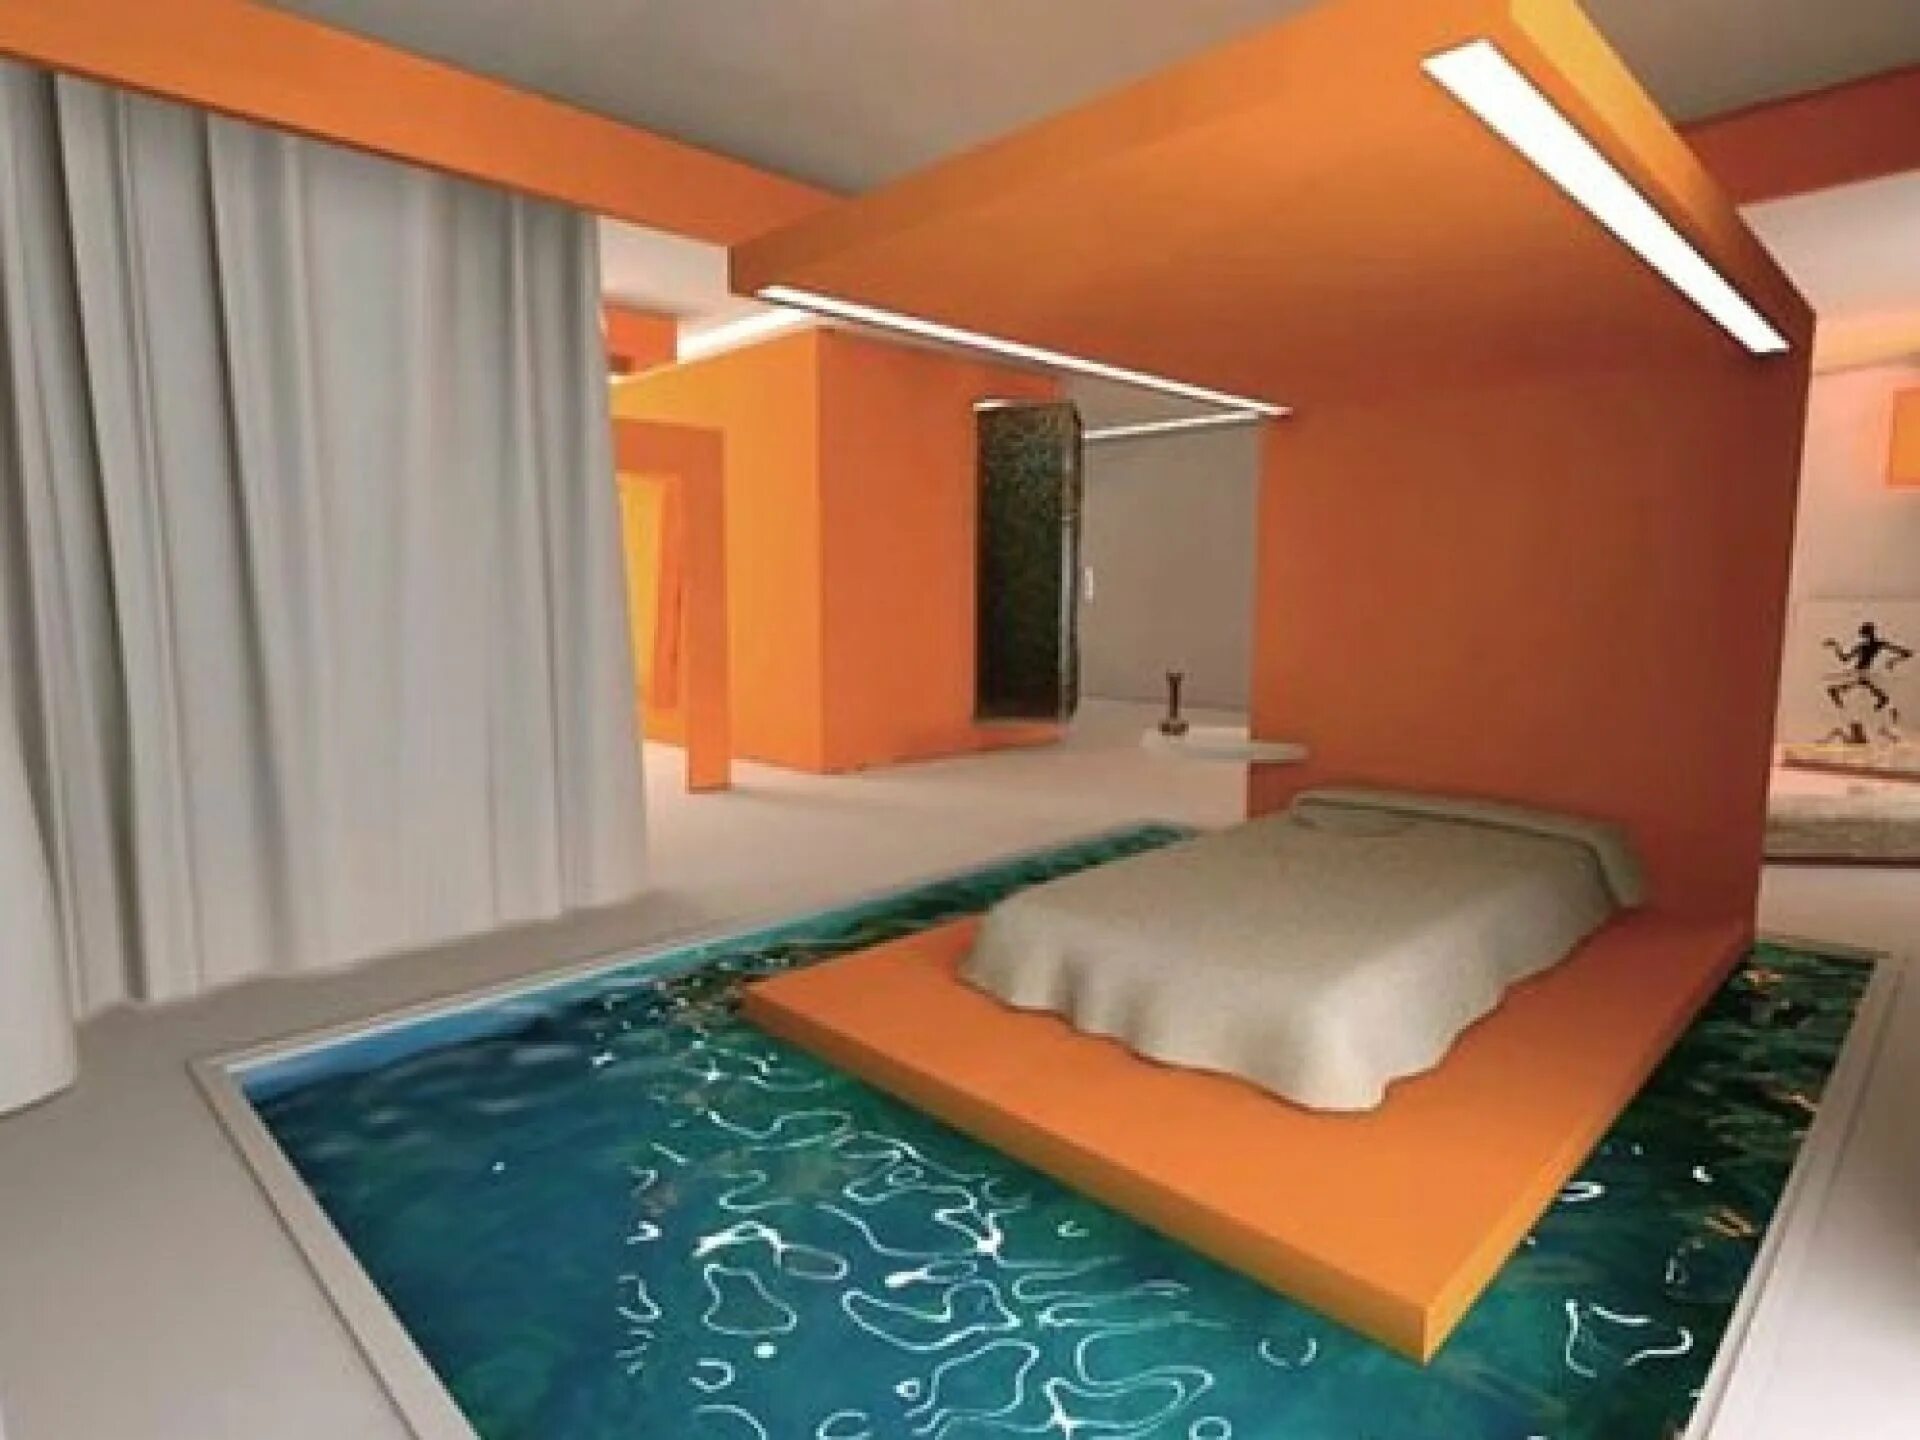 Bedroom pool. Спальня с бассейном. Бассейн в спальне. Комната с бассейном и кроватью. Бассейн в комнате.